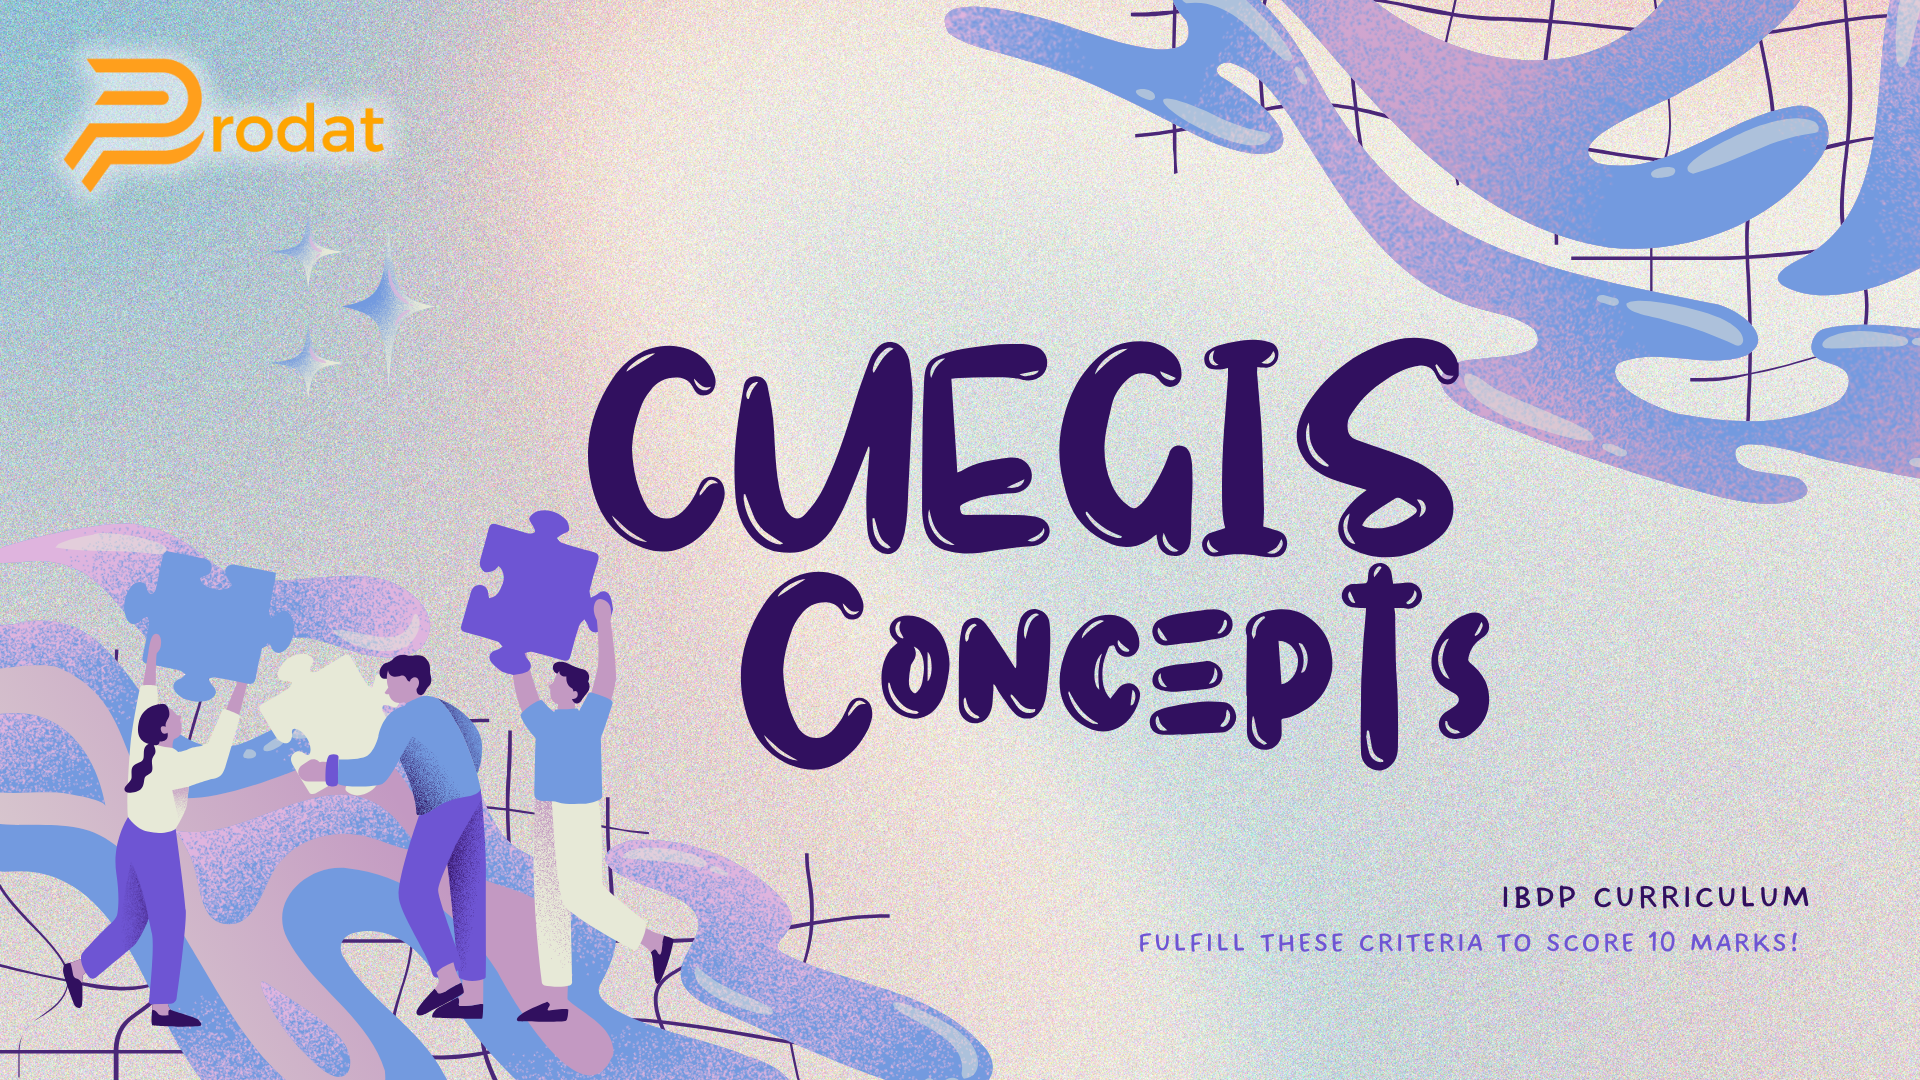 CUEGIS concepts